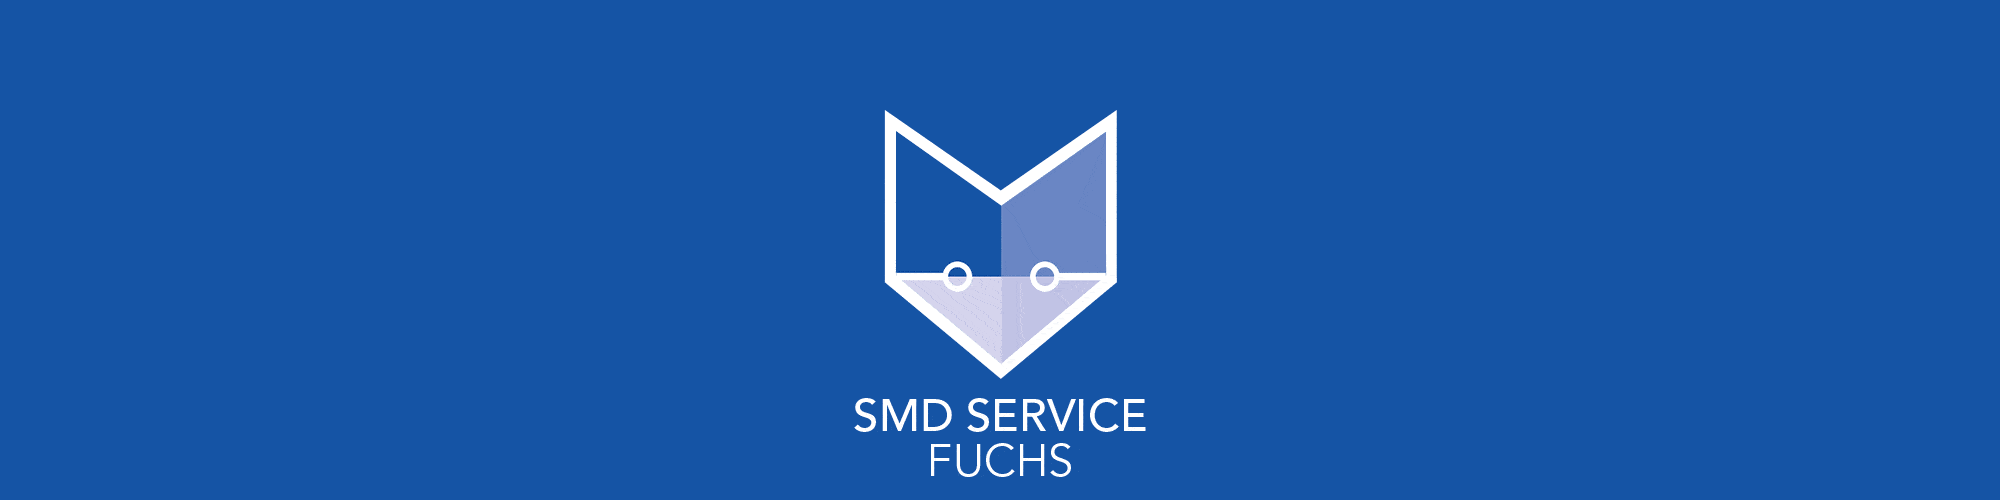 smd-service-fuchs-headerbild-blau-mit-animiertem-fuchslogo